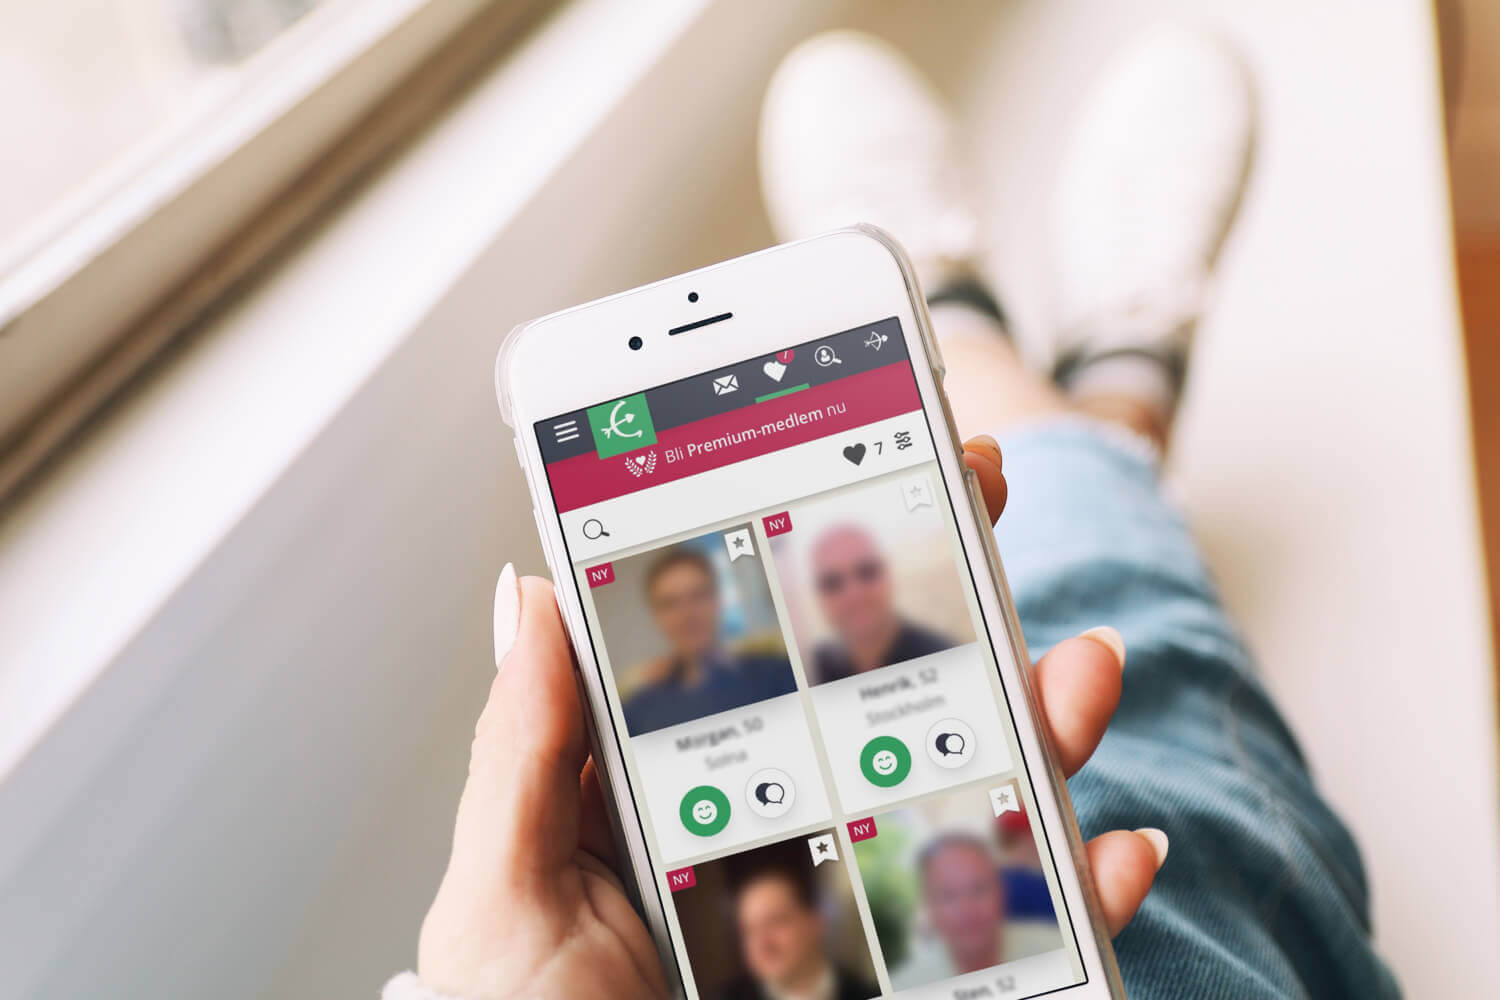 chatta och dejta webbplatser är Bumble dating app på Android